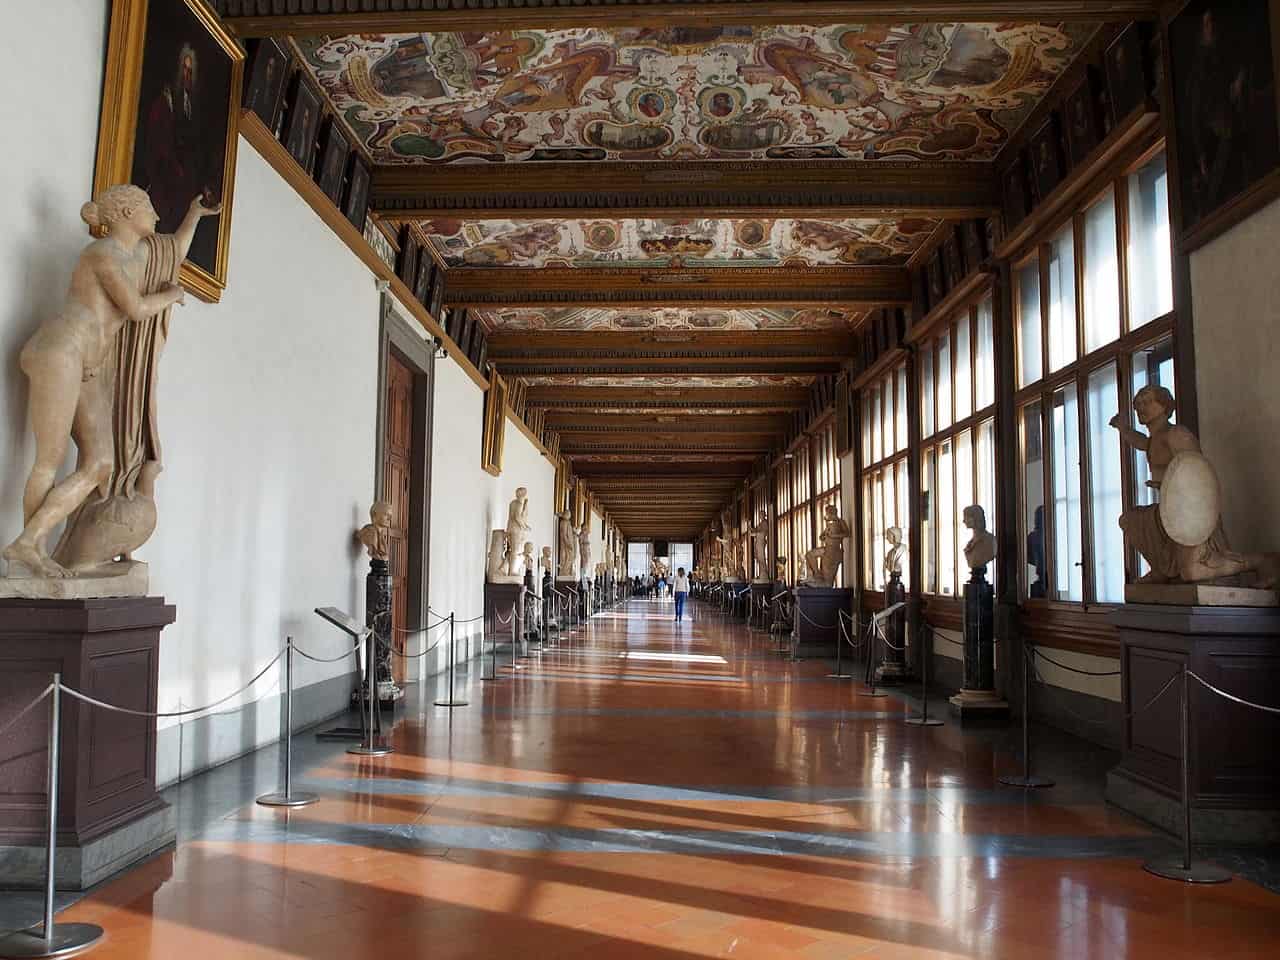 1280px-Uffizi_Gallery_hallway-min